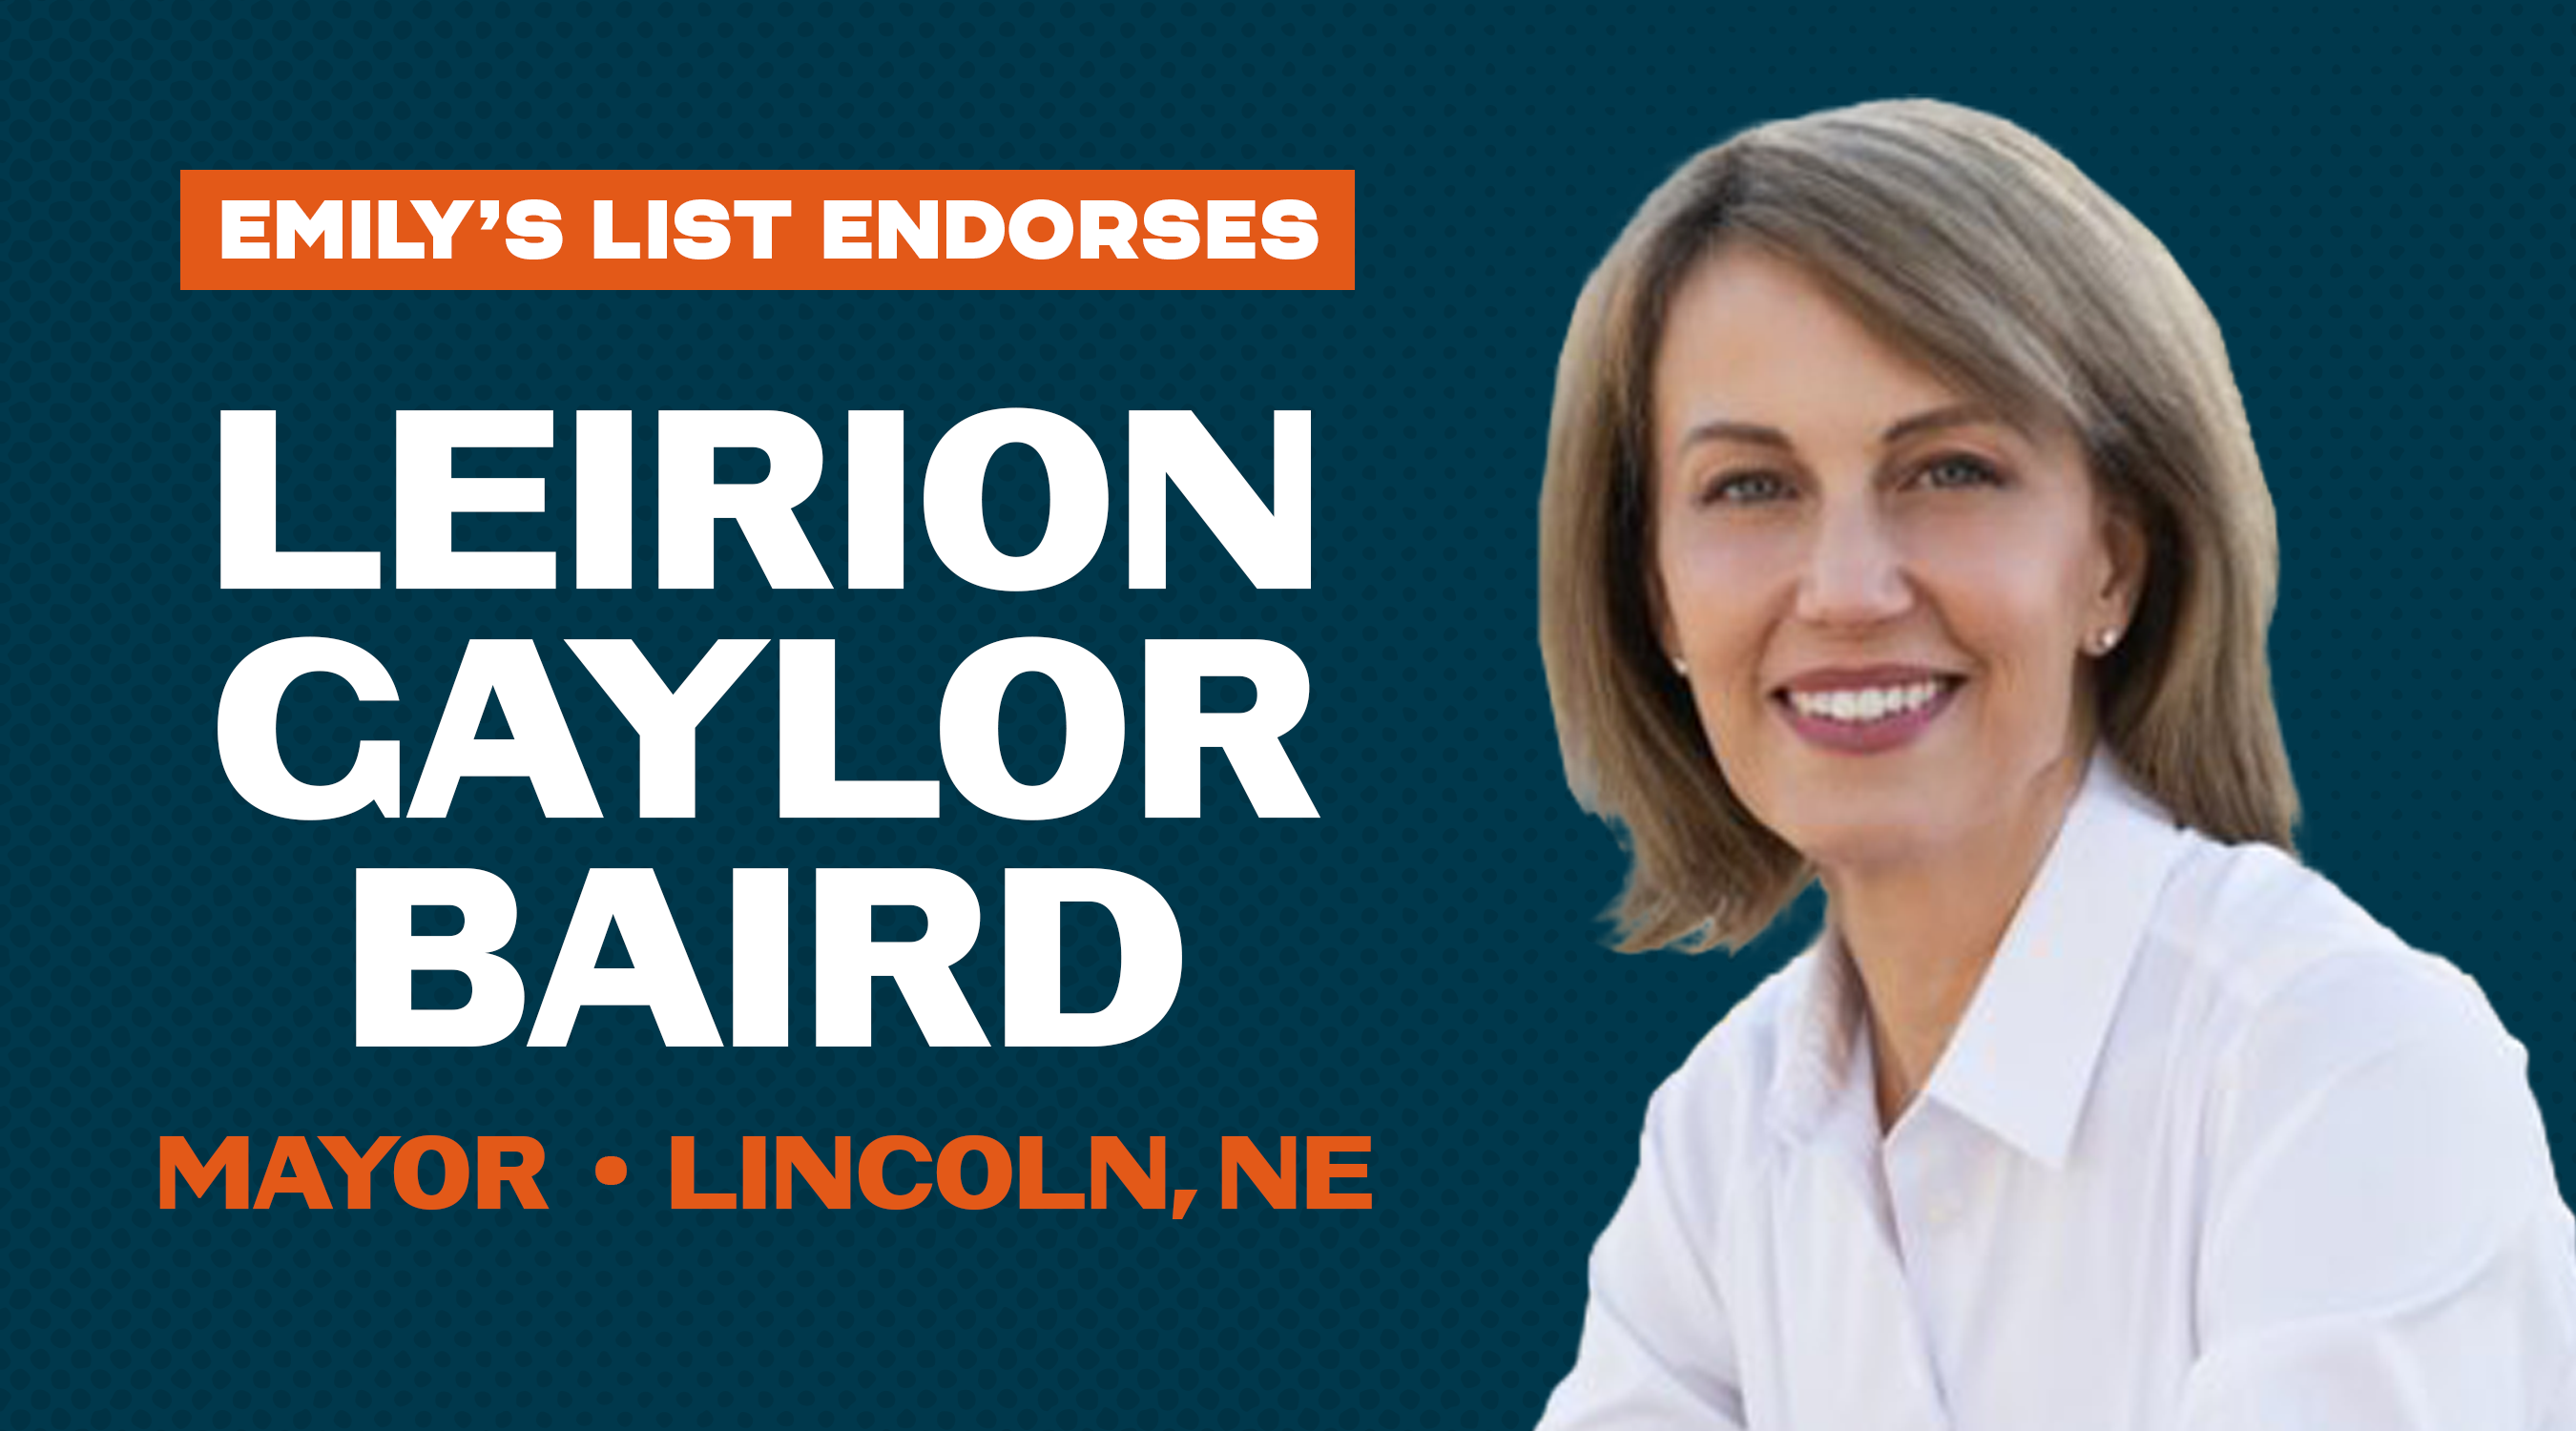 EMILYs List Endorses Leirion Gaylor Baird for Mayor of Lincoln